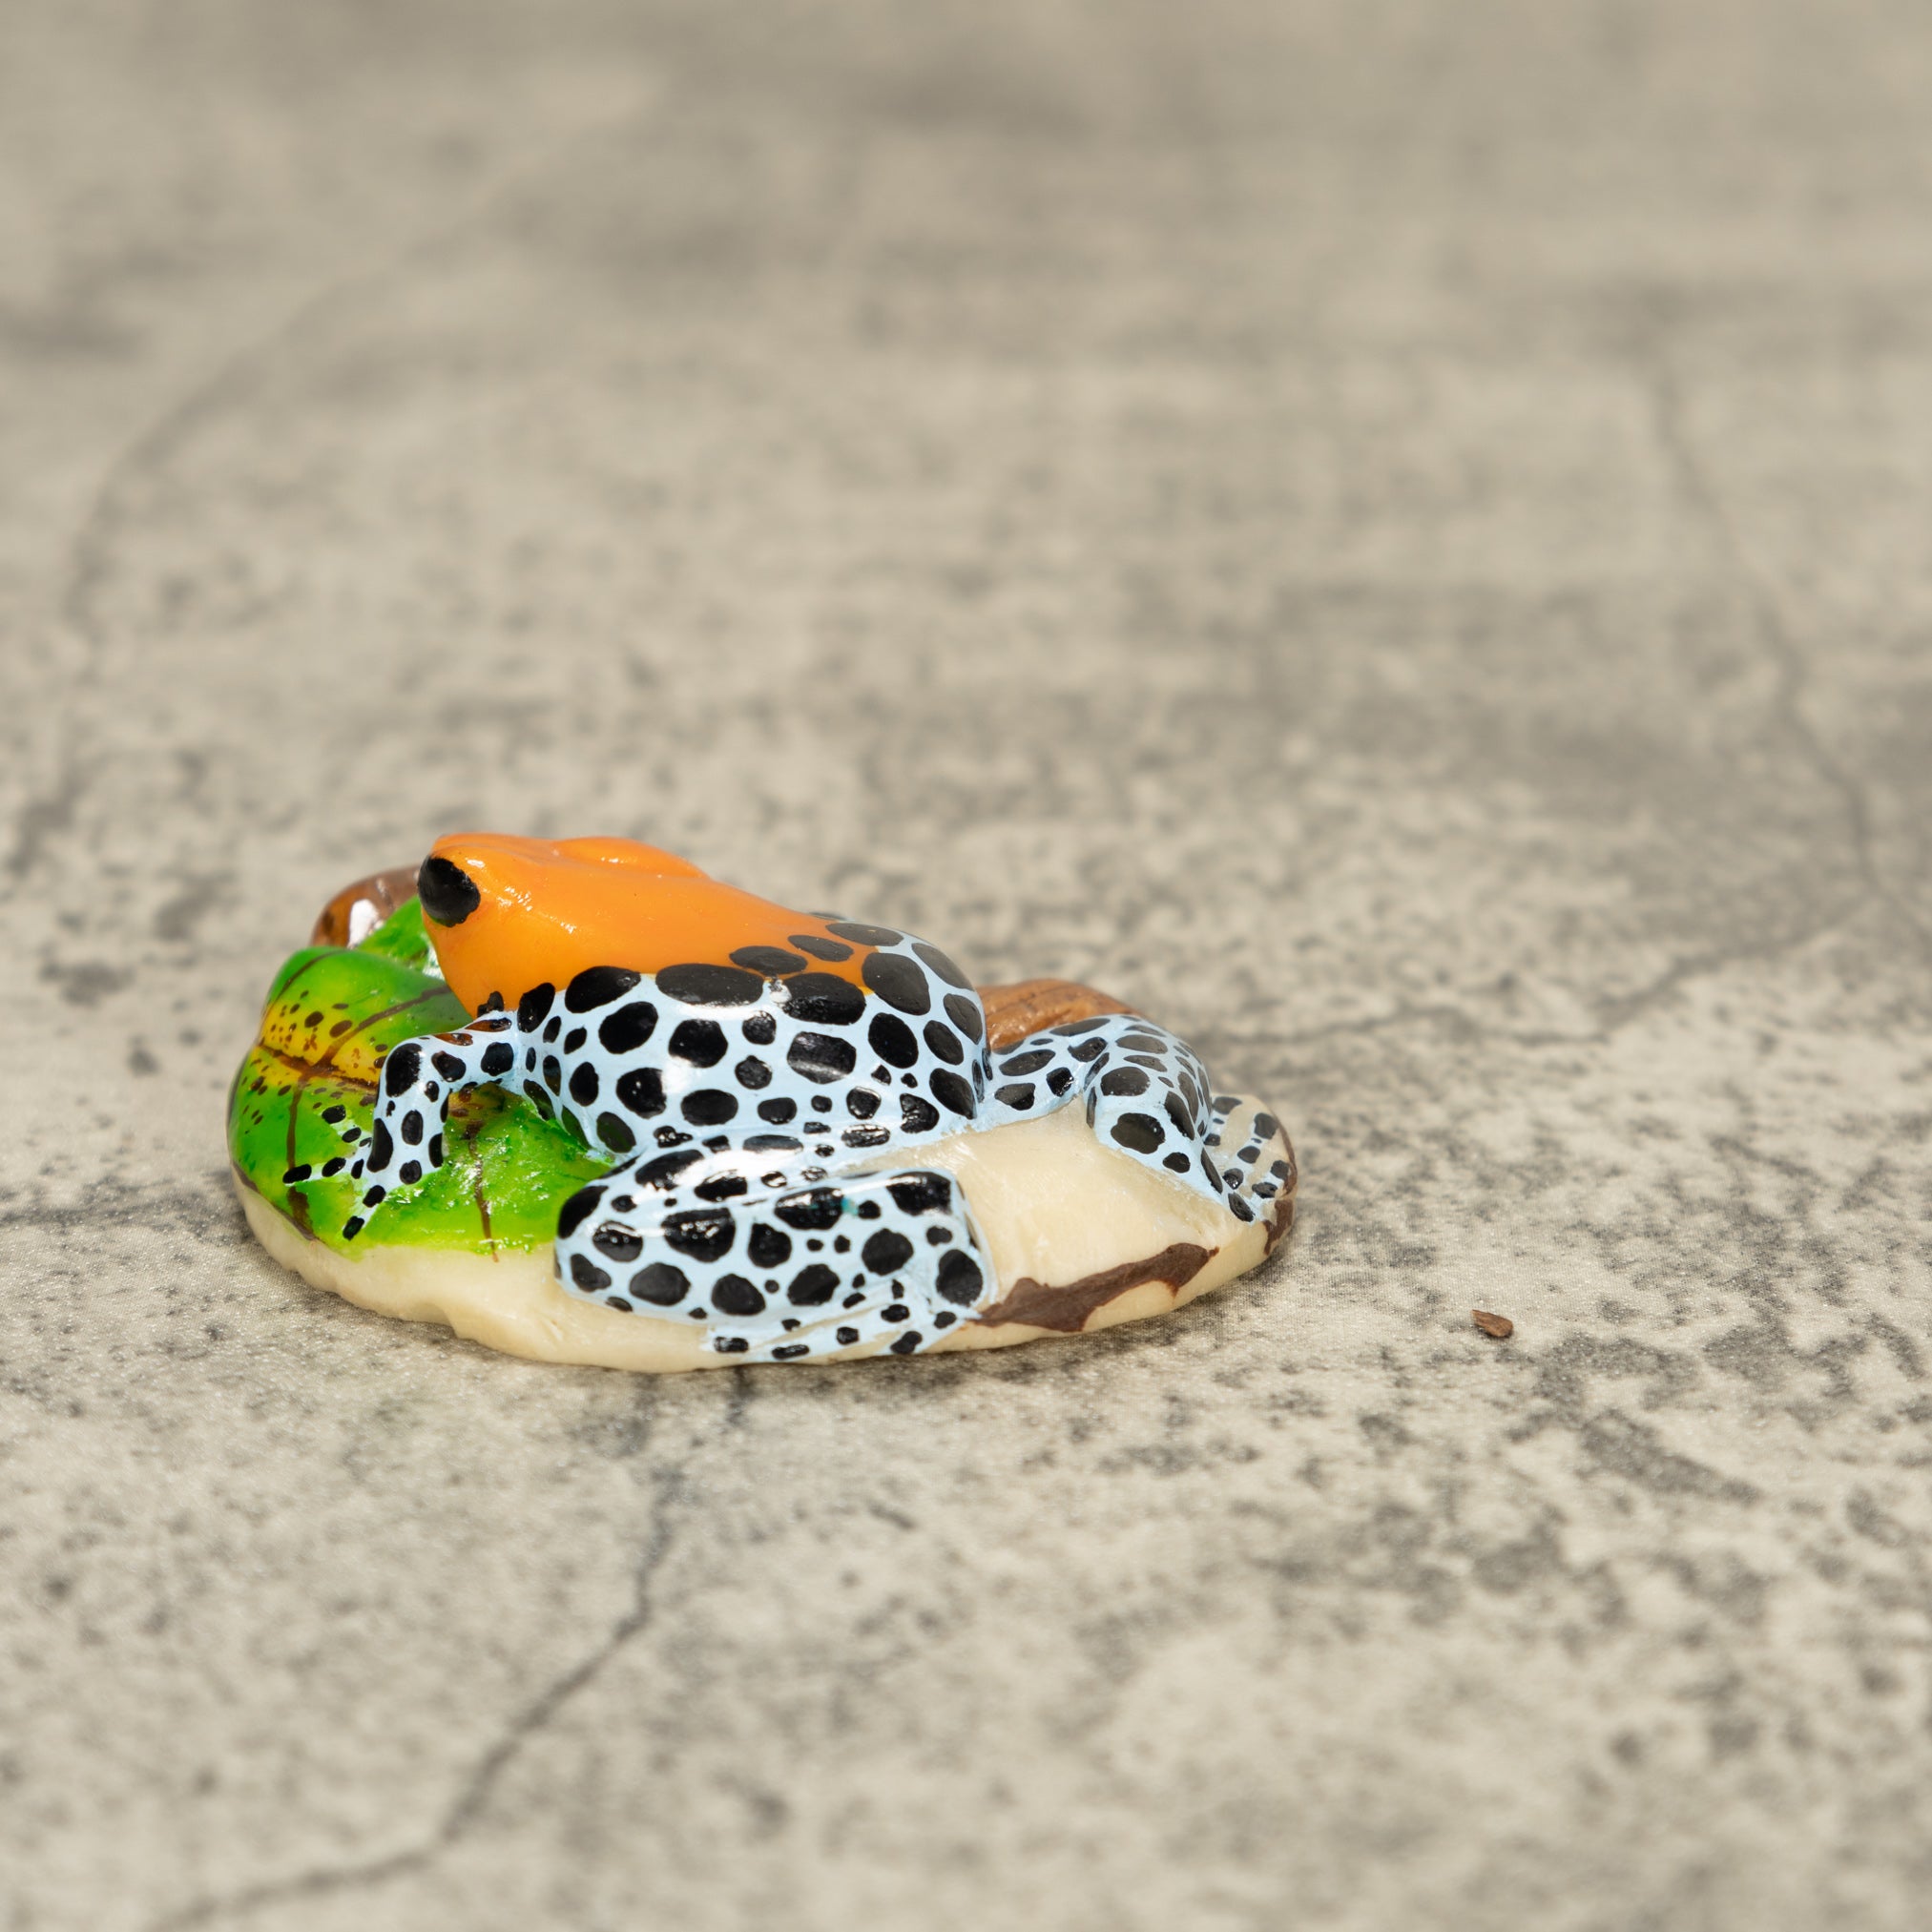 Orange Blue And Black Poison Dart Frog Tagua Nut Carving